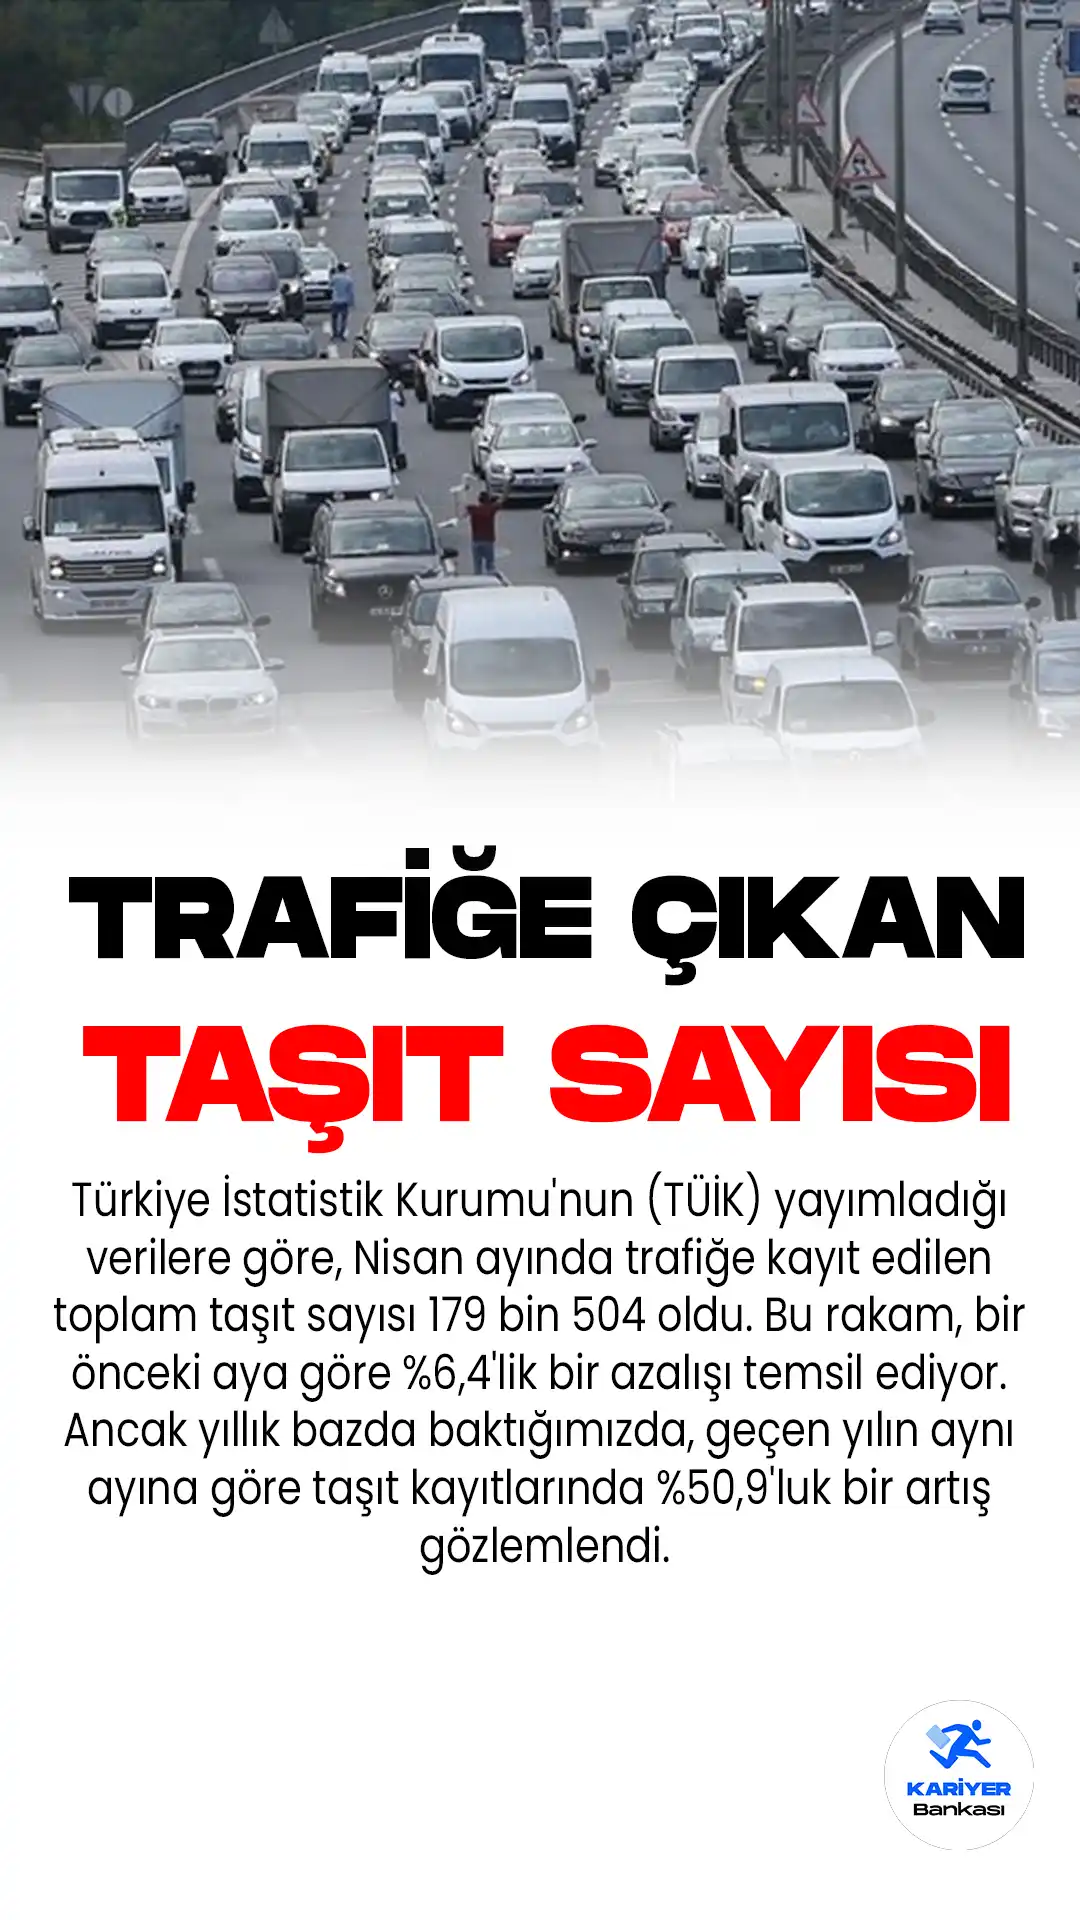 Türkiye İstatistik Kurumu'nun (TÜİK) yayımladığı verilere göre, Nisan ayında trafiğe kayıt edilen toplam taşıt sayısı 179 bin 504 oldu.